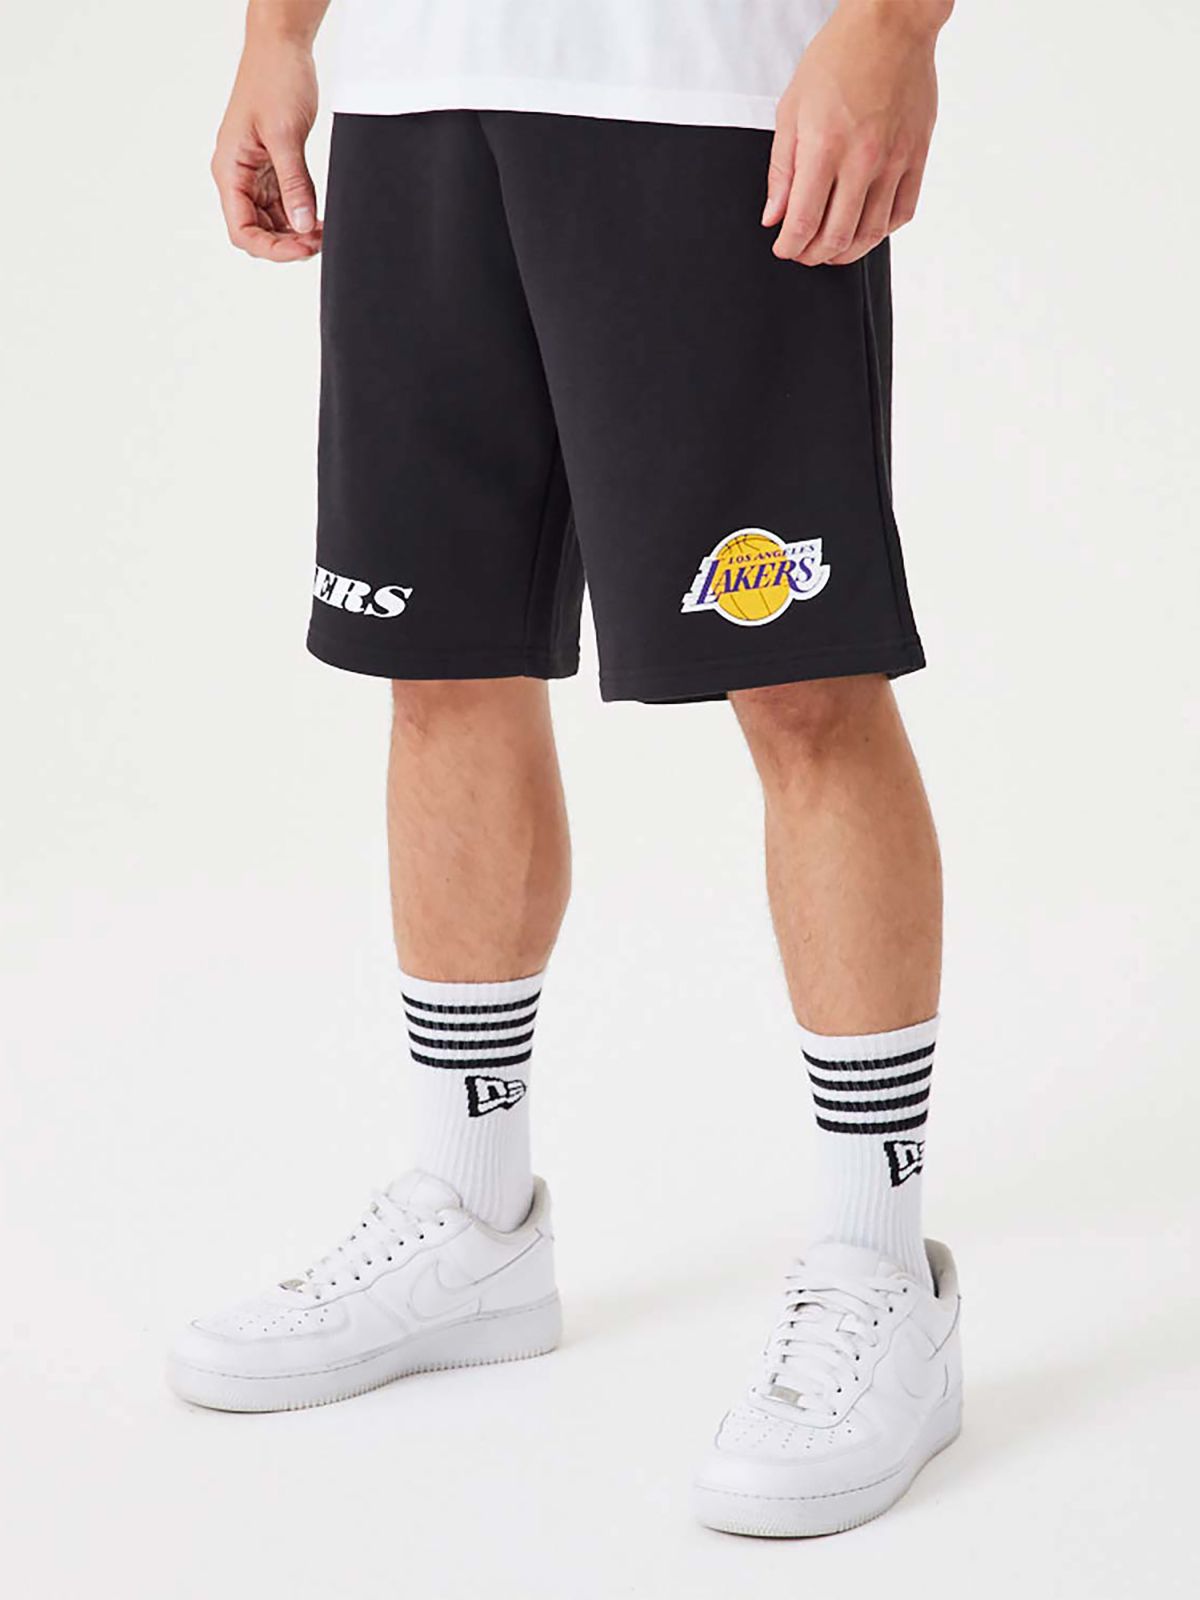  מכנסי טרנינג קצרים עם לוגו Lakers של NEW ERA